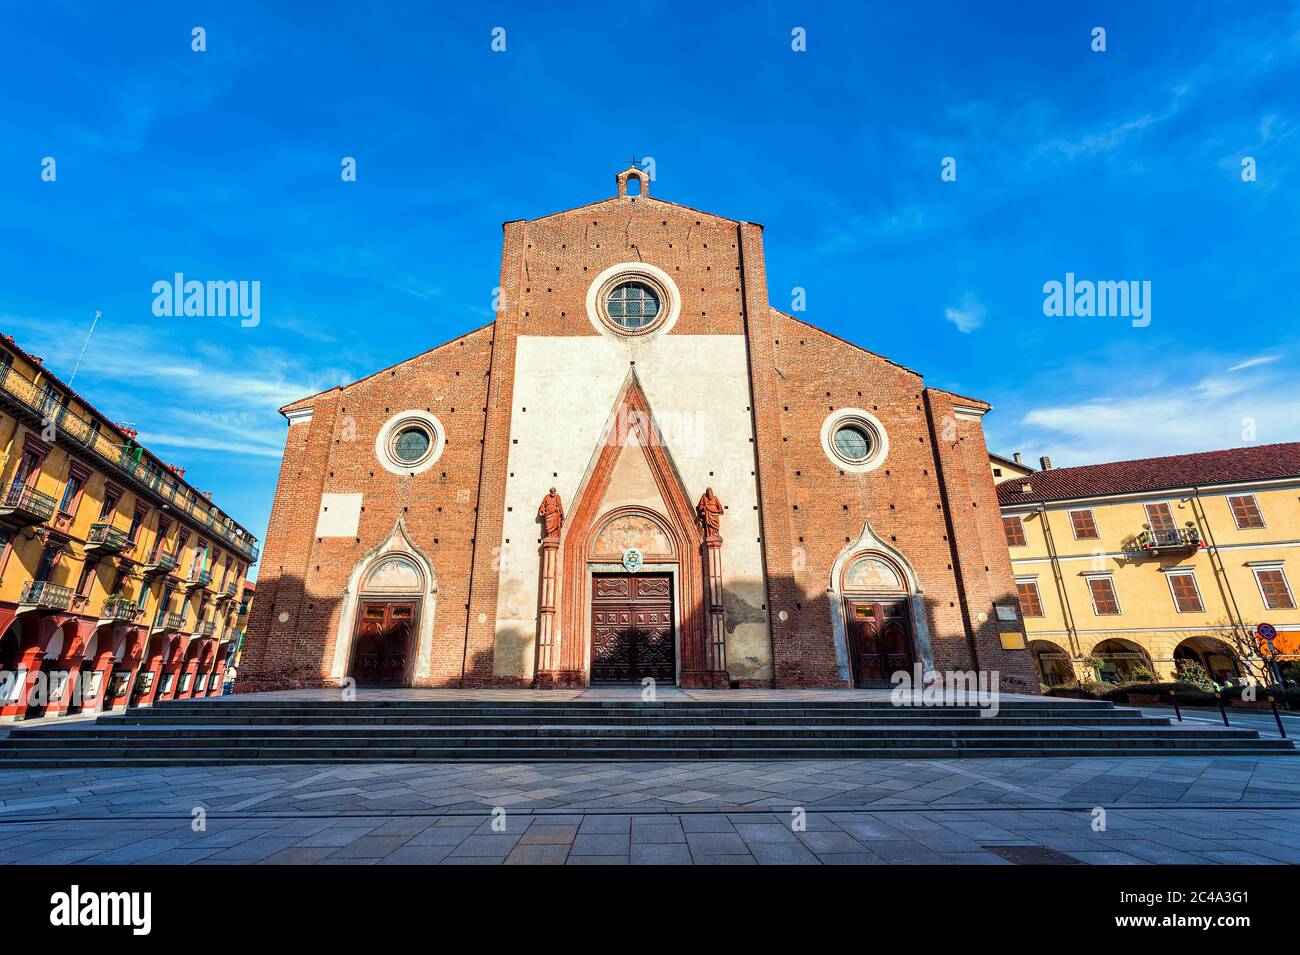 Facciata della cattedrale di Maria Vergine Assunta sotto il cielo blu nella cittadina di Saluzzo in Piemonte, Italia settentrionale. Foto Stock